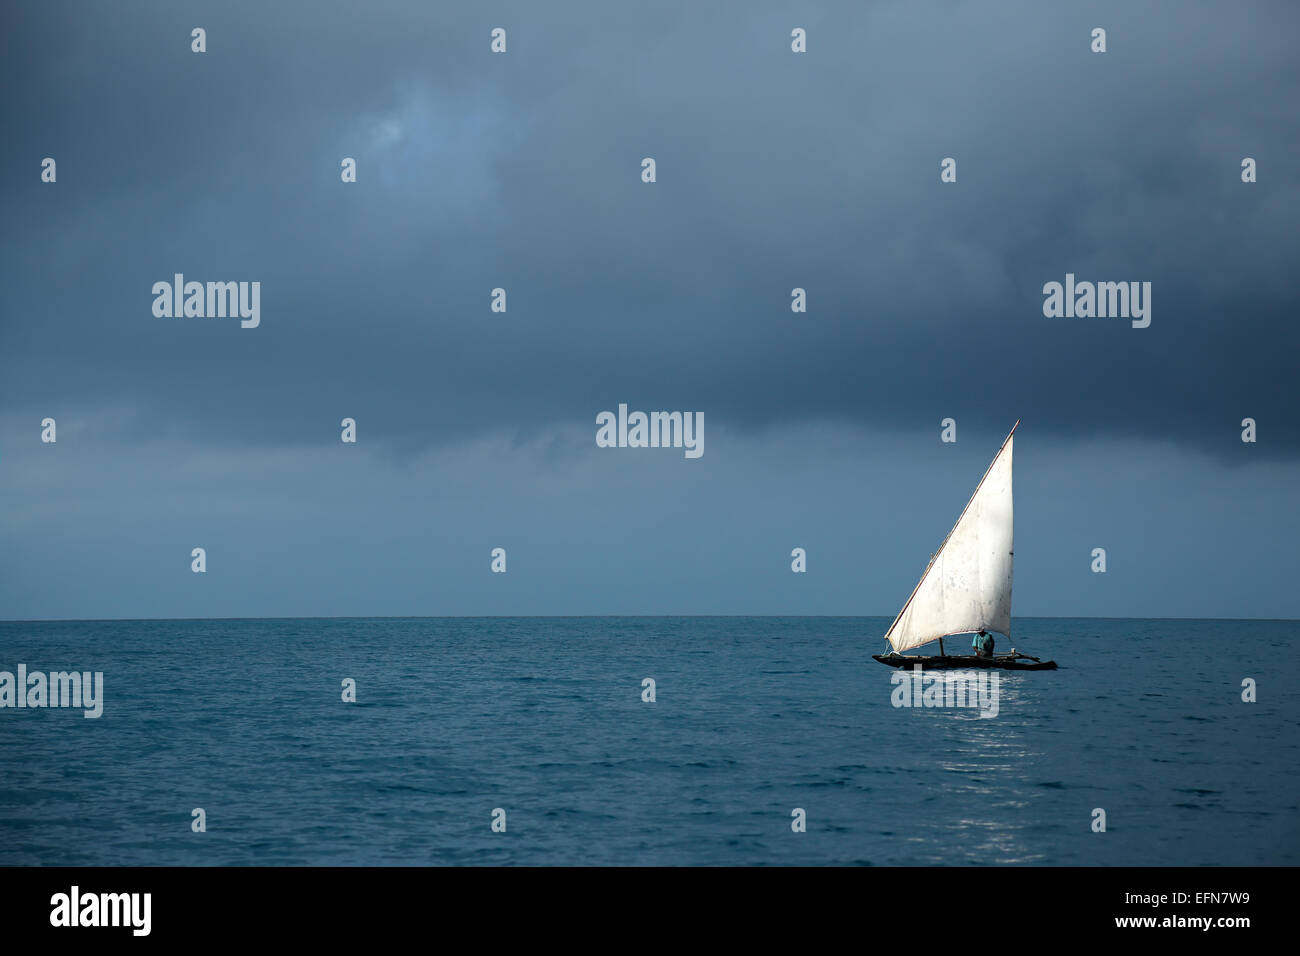 Voilier en bois (dhow) sur l'eau et des nuages d'orage, l'île de Zanzibar Banque D'Images